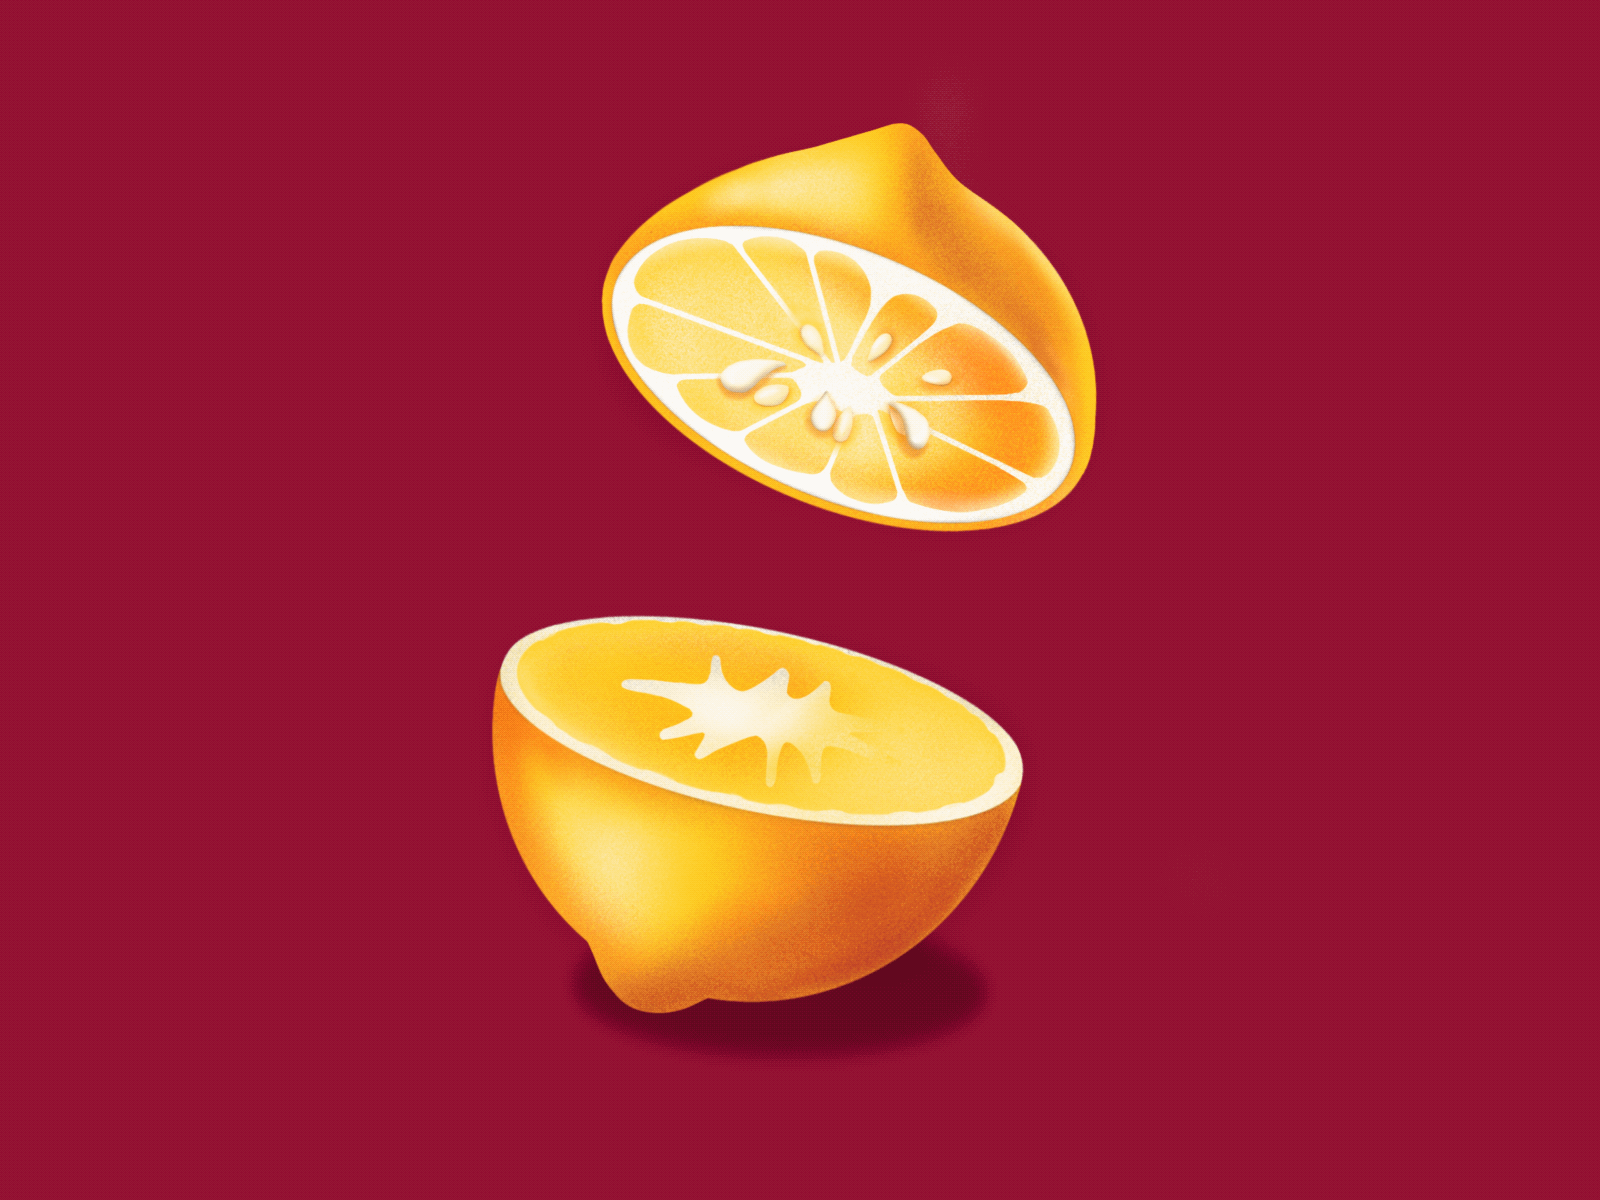 Lemon/orange animation animation design illustration lemon orange procreate